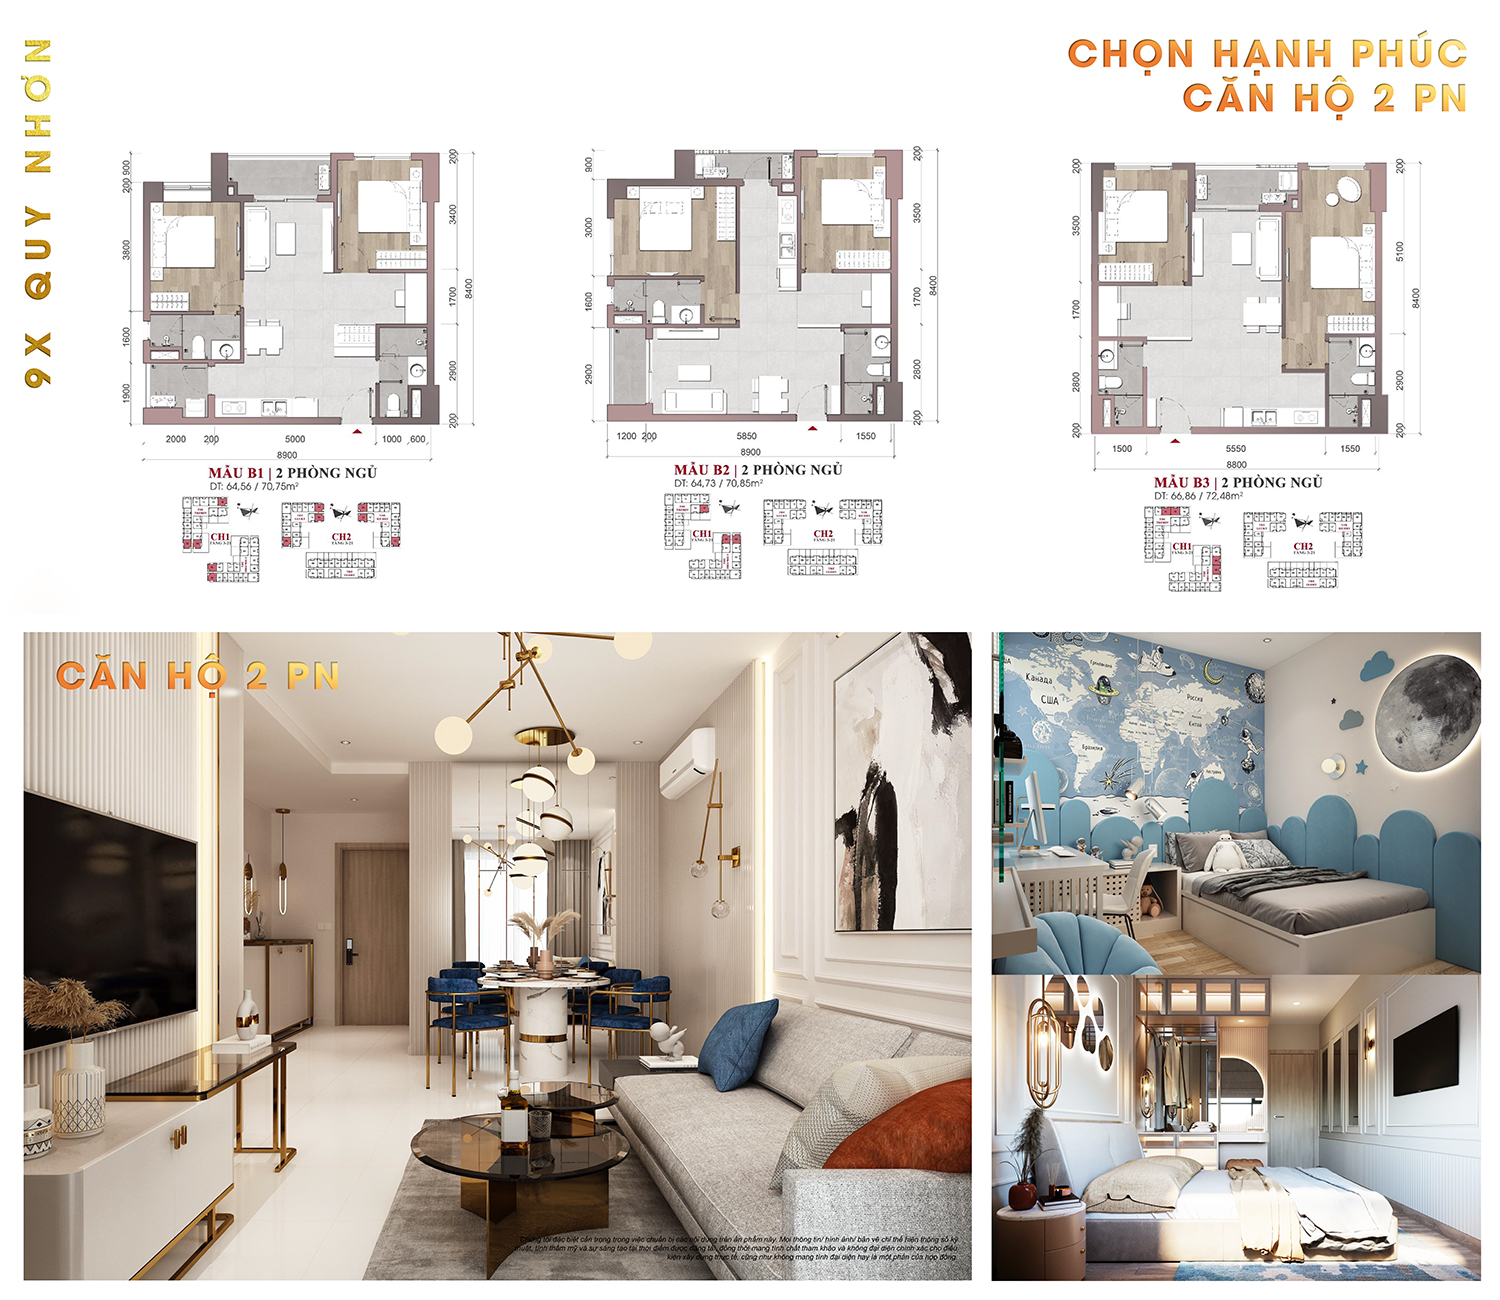 Thiết kế layout căn 2 phòng ngủ 9X Quy Nhơn Hưng Thịnh